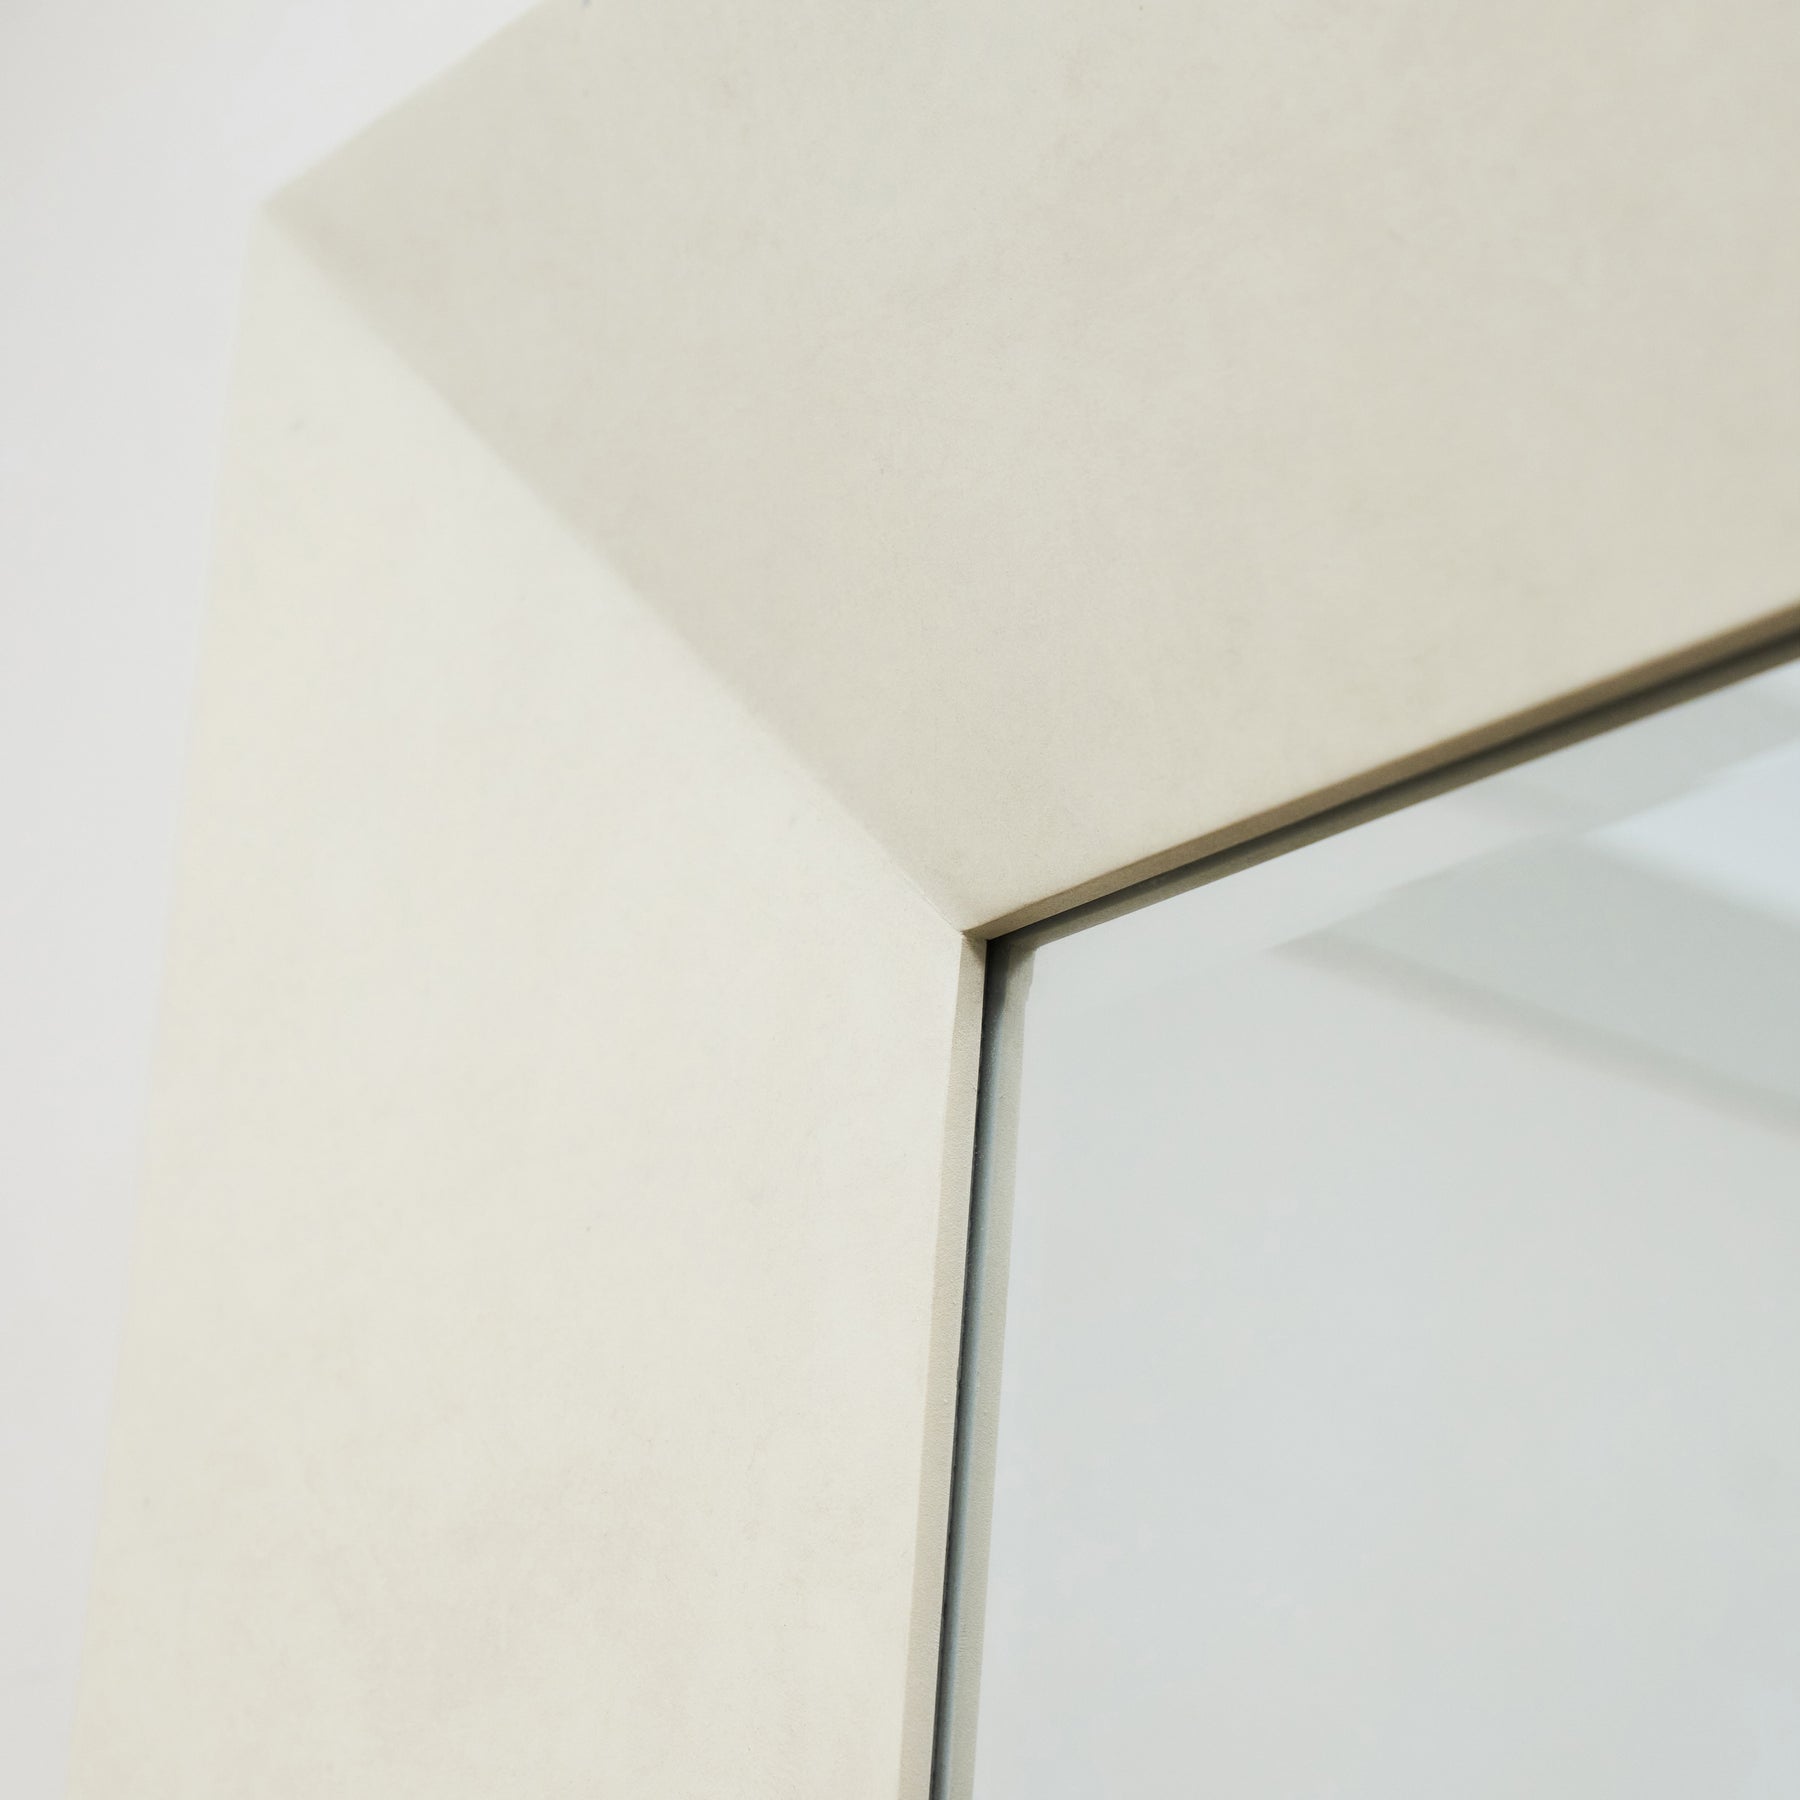 Full length extra large rectangular concrete mirror top concave corner